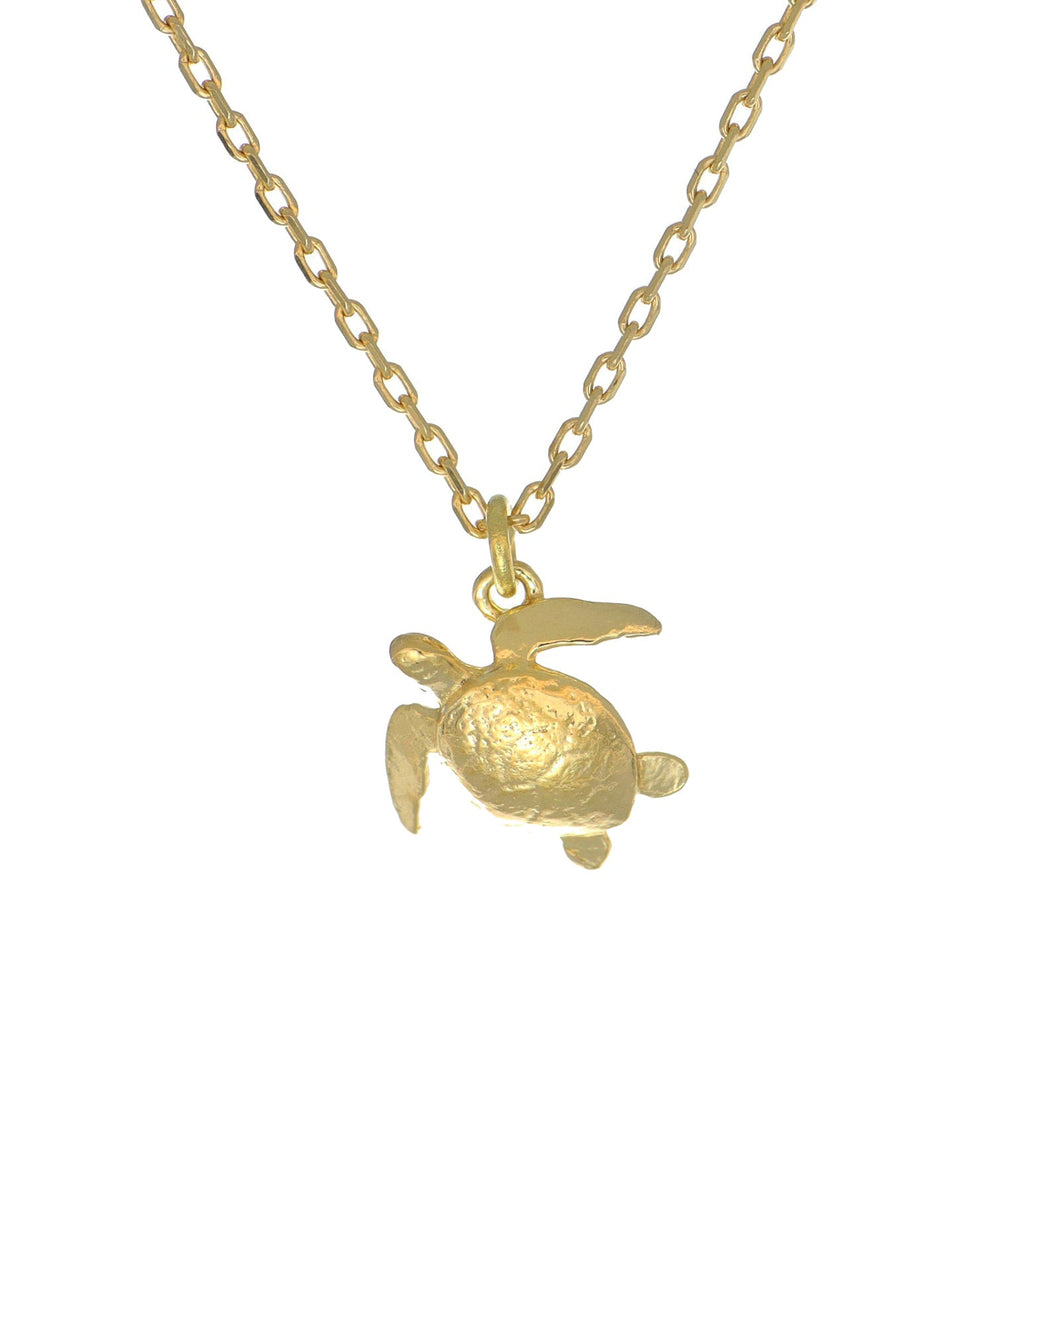 Teeny Tiny Sea Turtle Necklace